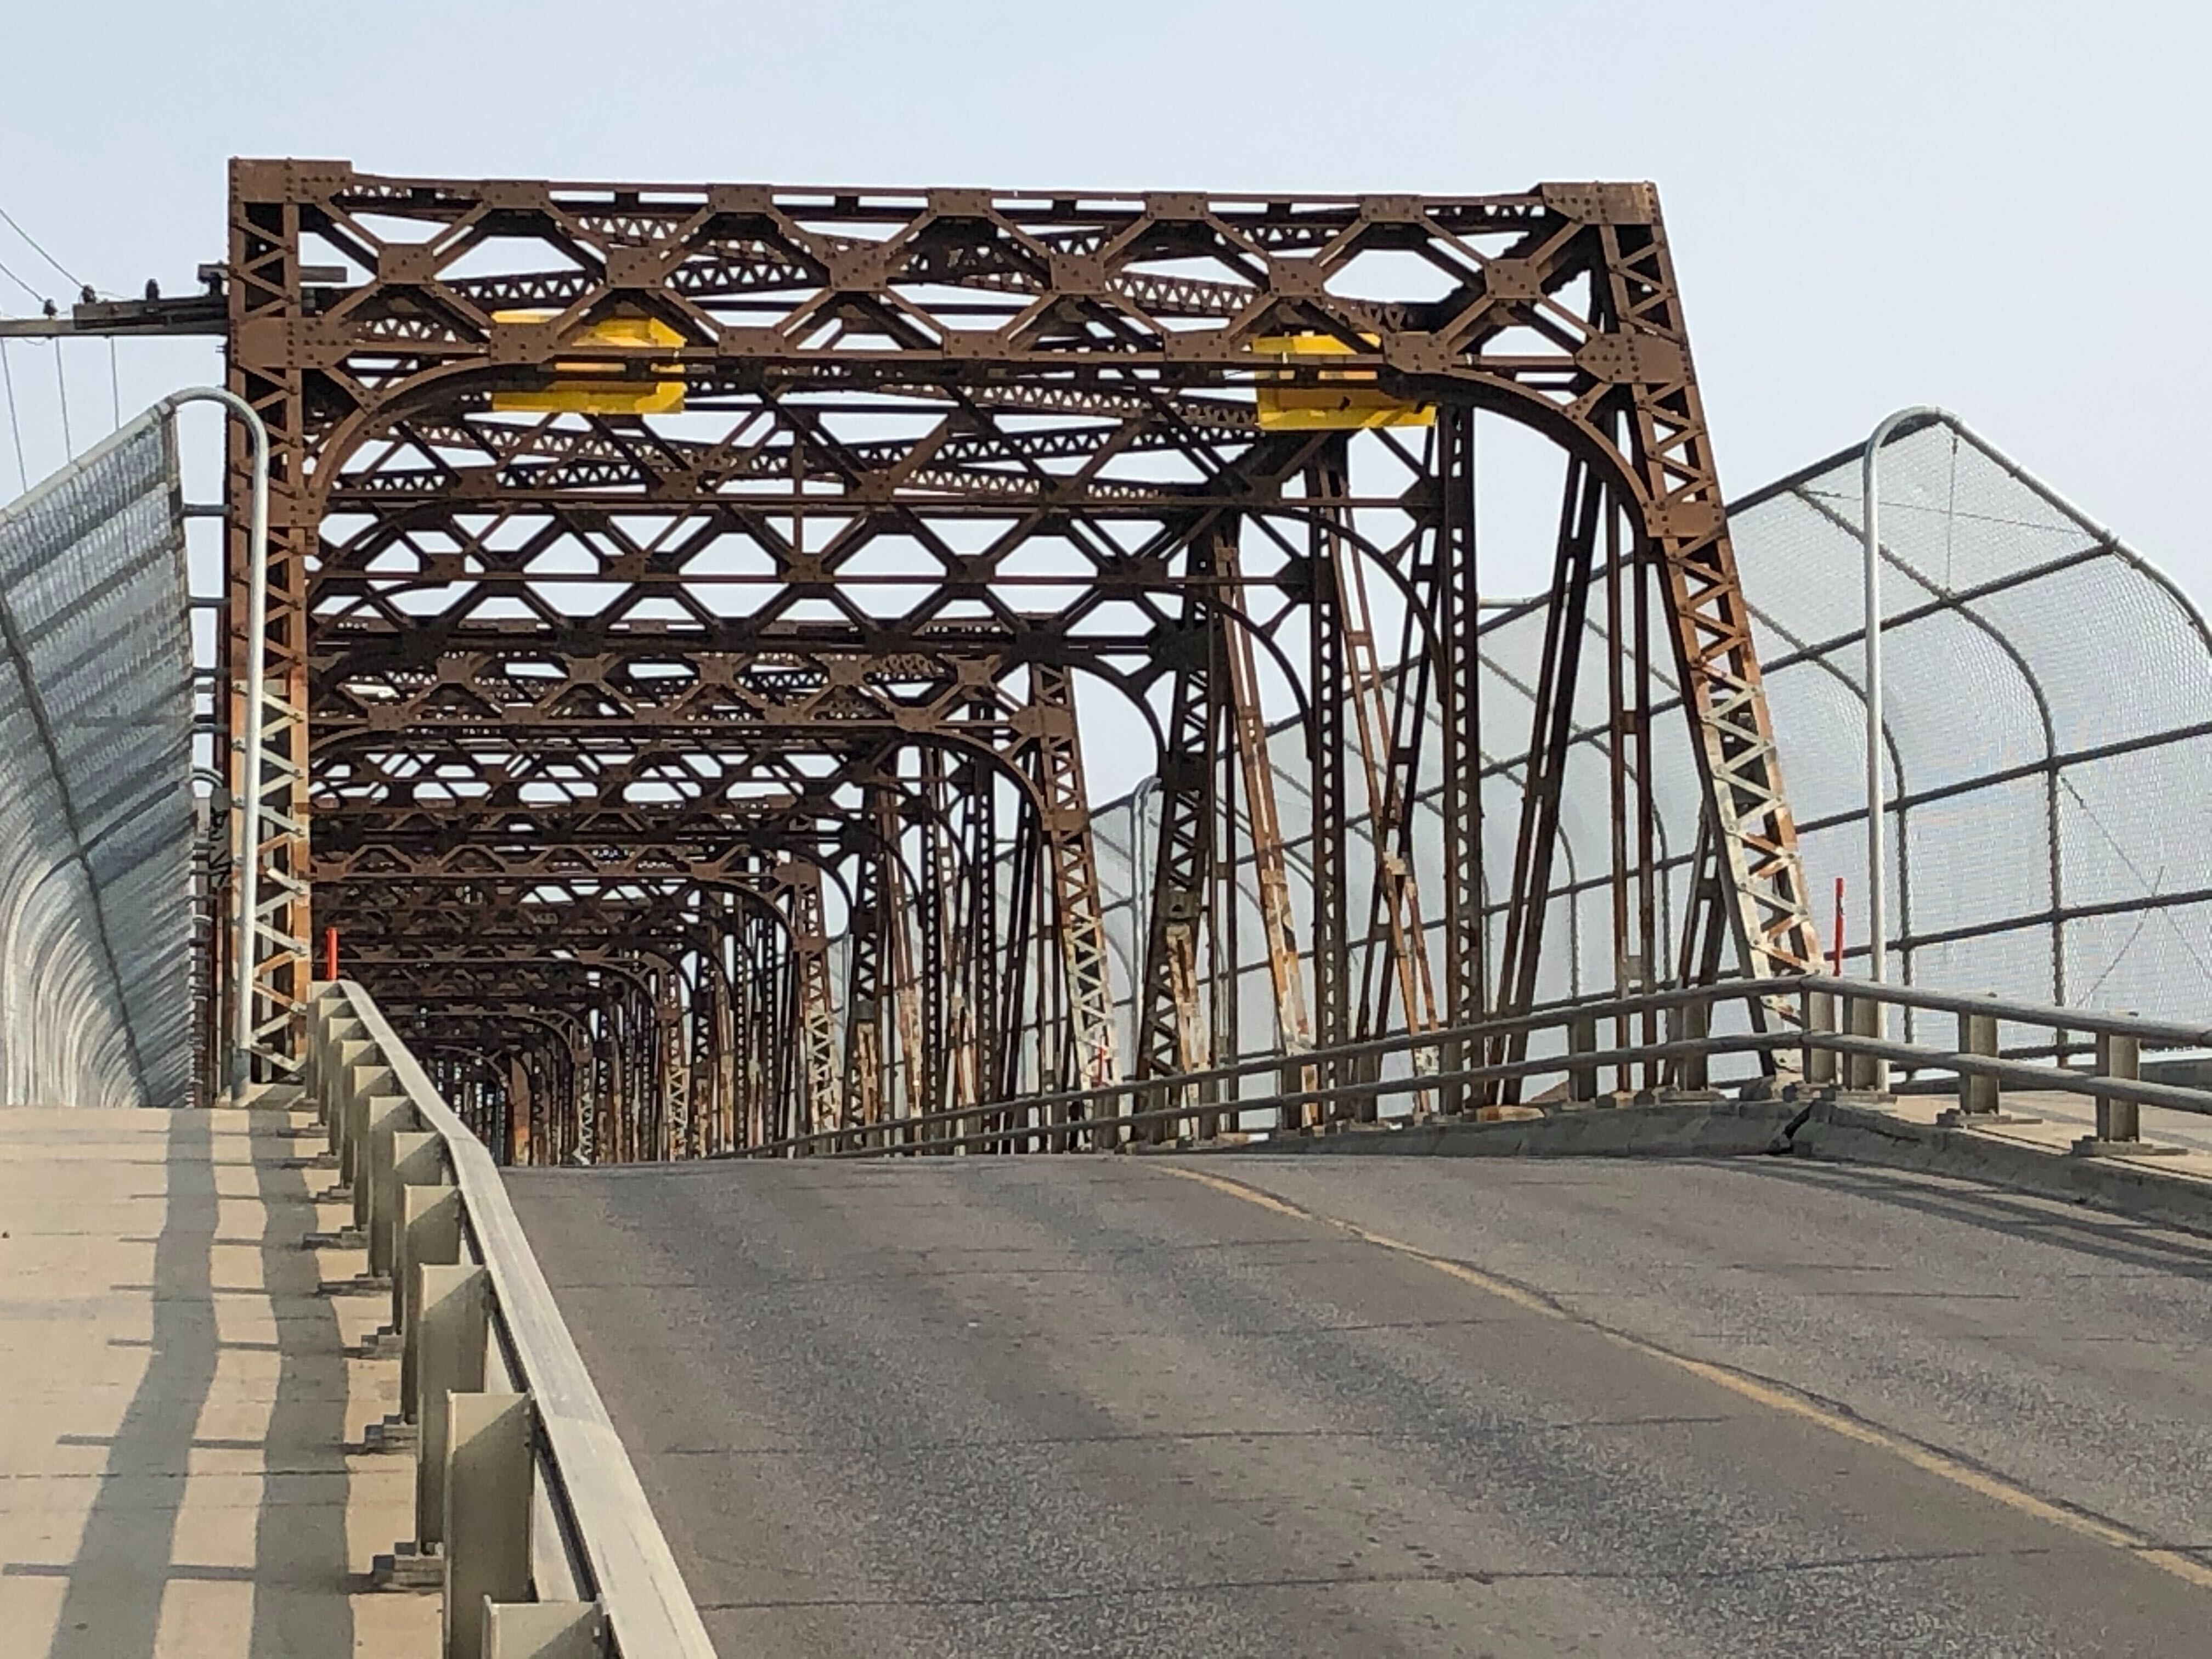 No band-aid solutions: Questions remain over permanent fate of Arlington Bridge